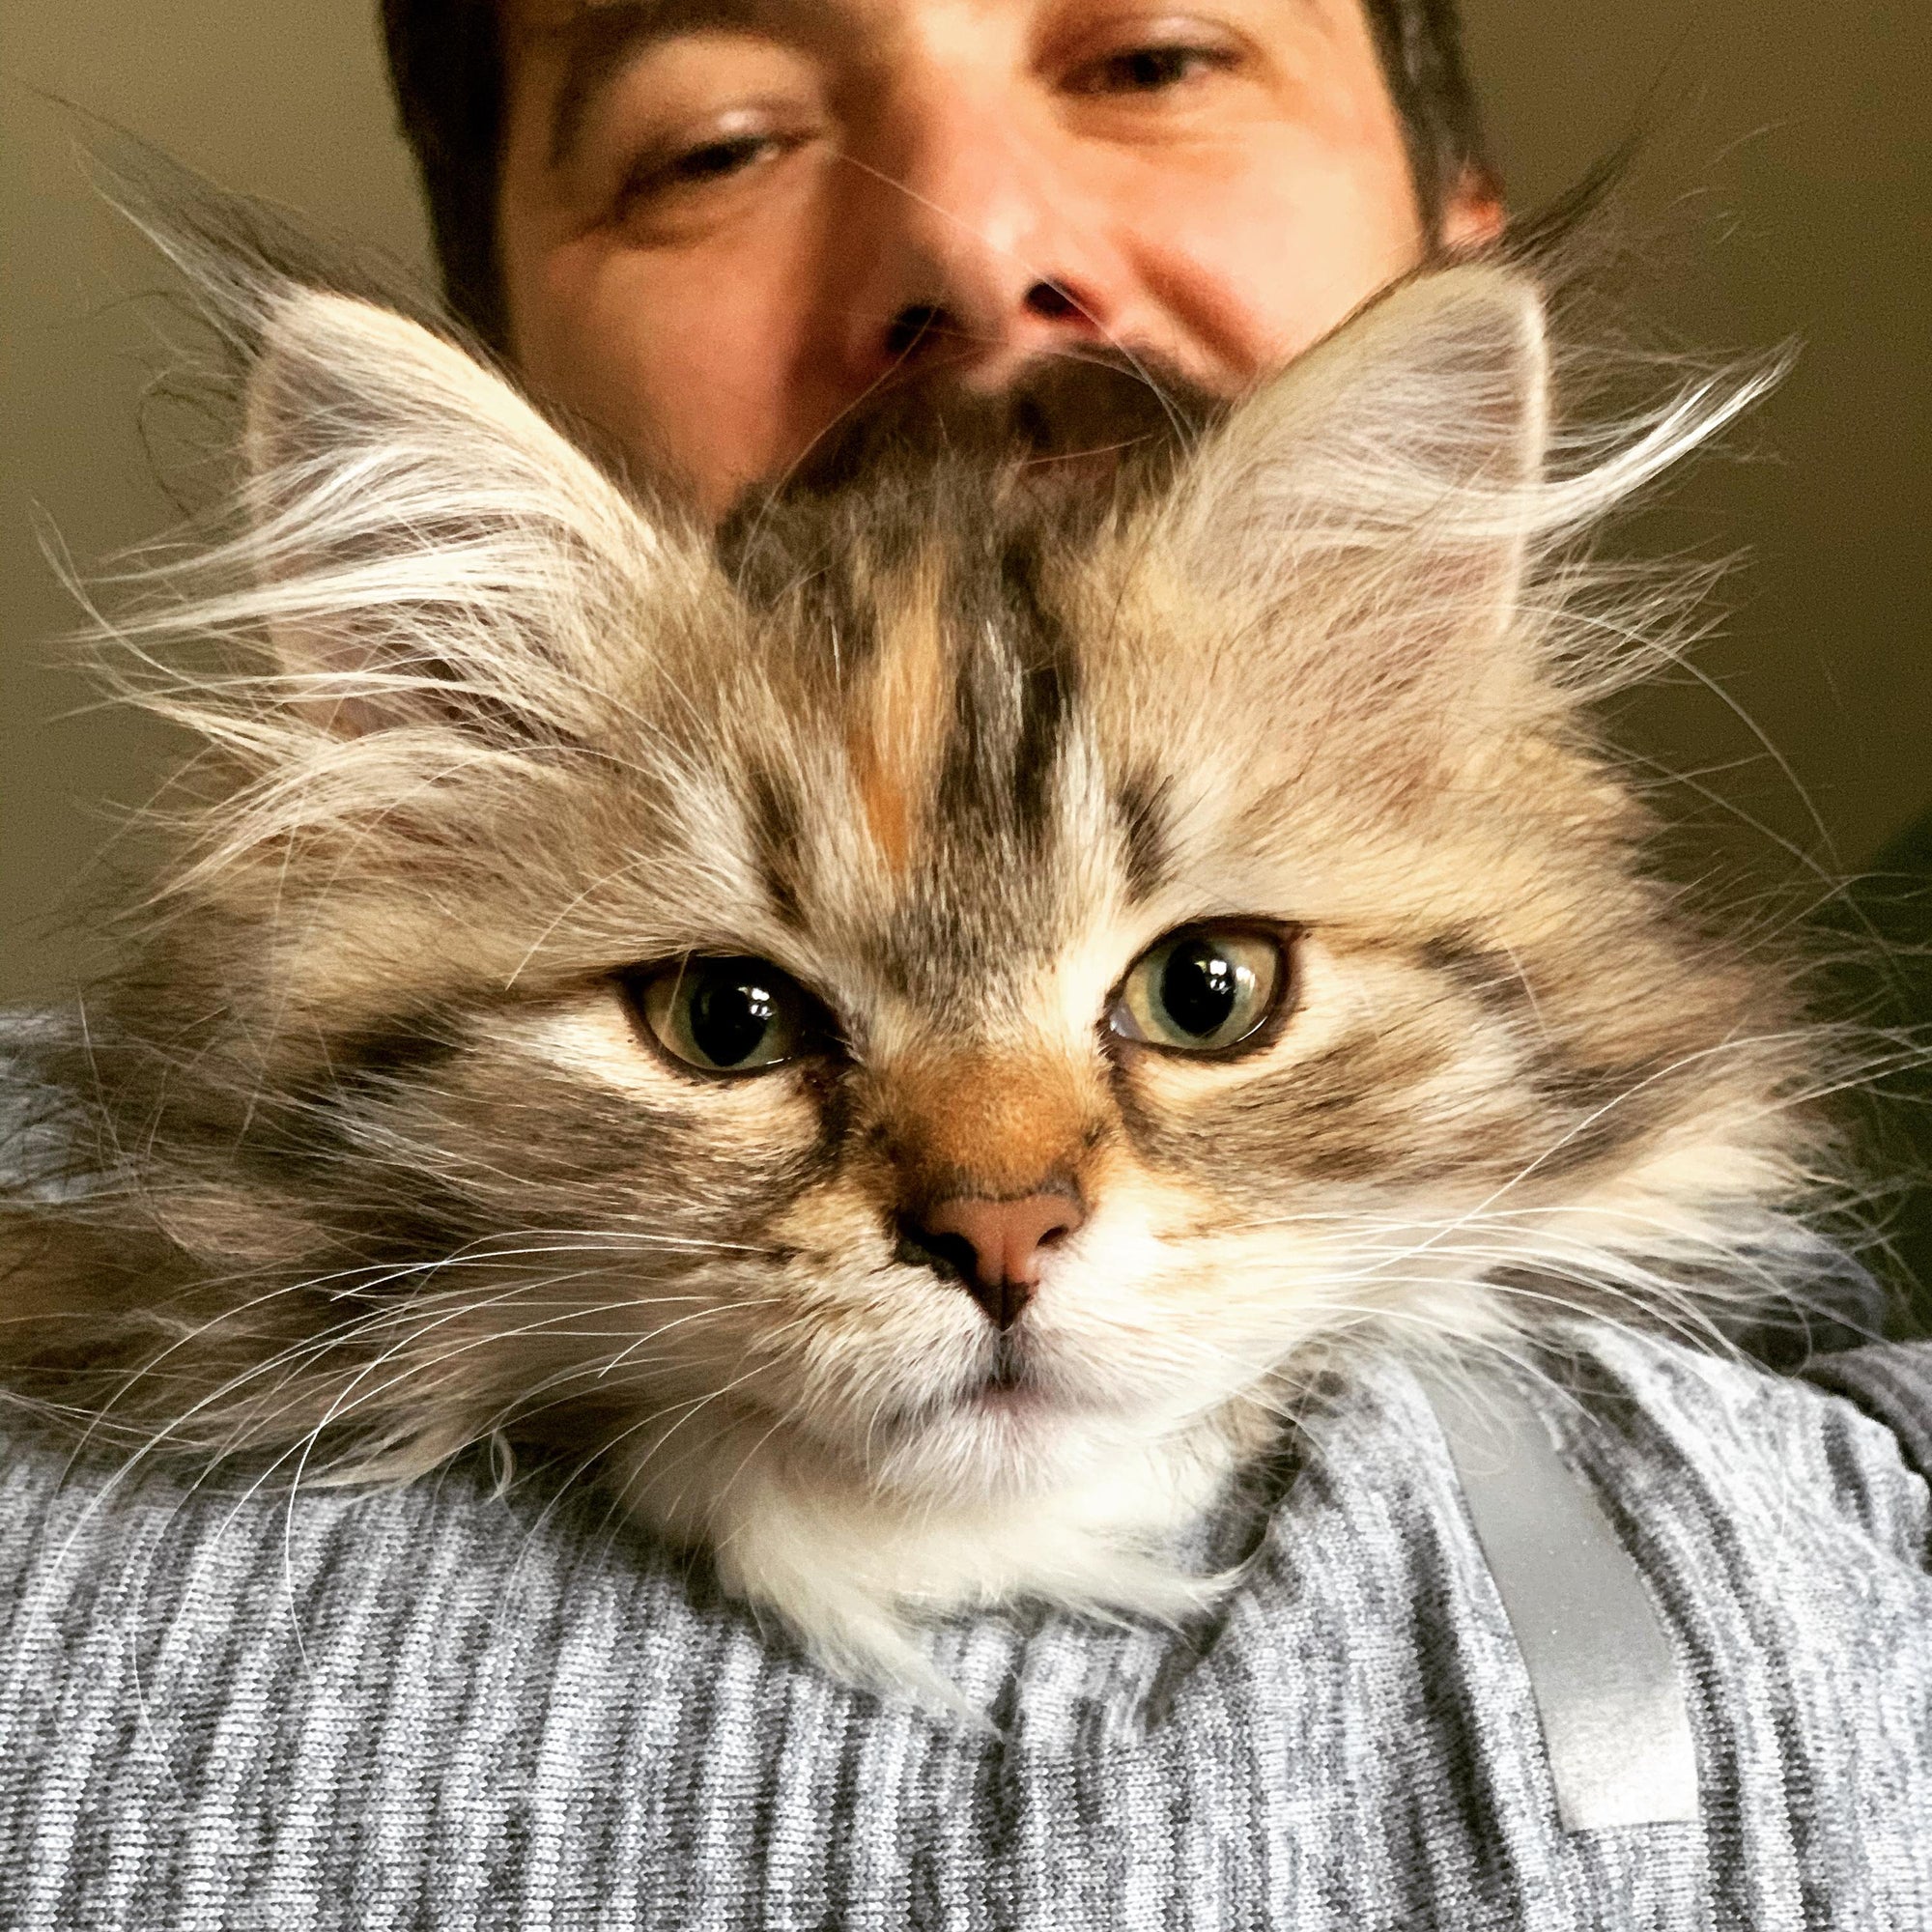 Meet Tanuki, Our New Shop Kitten